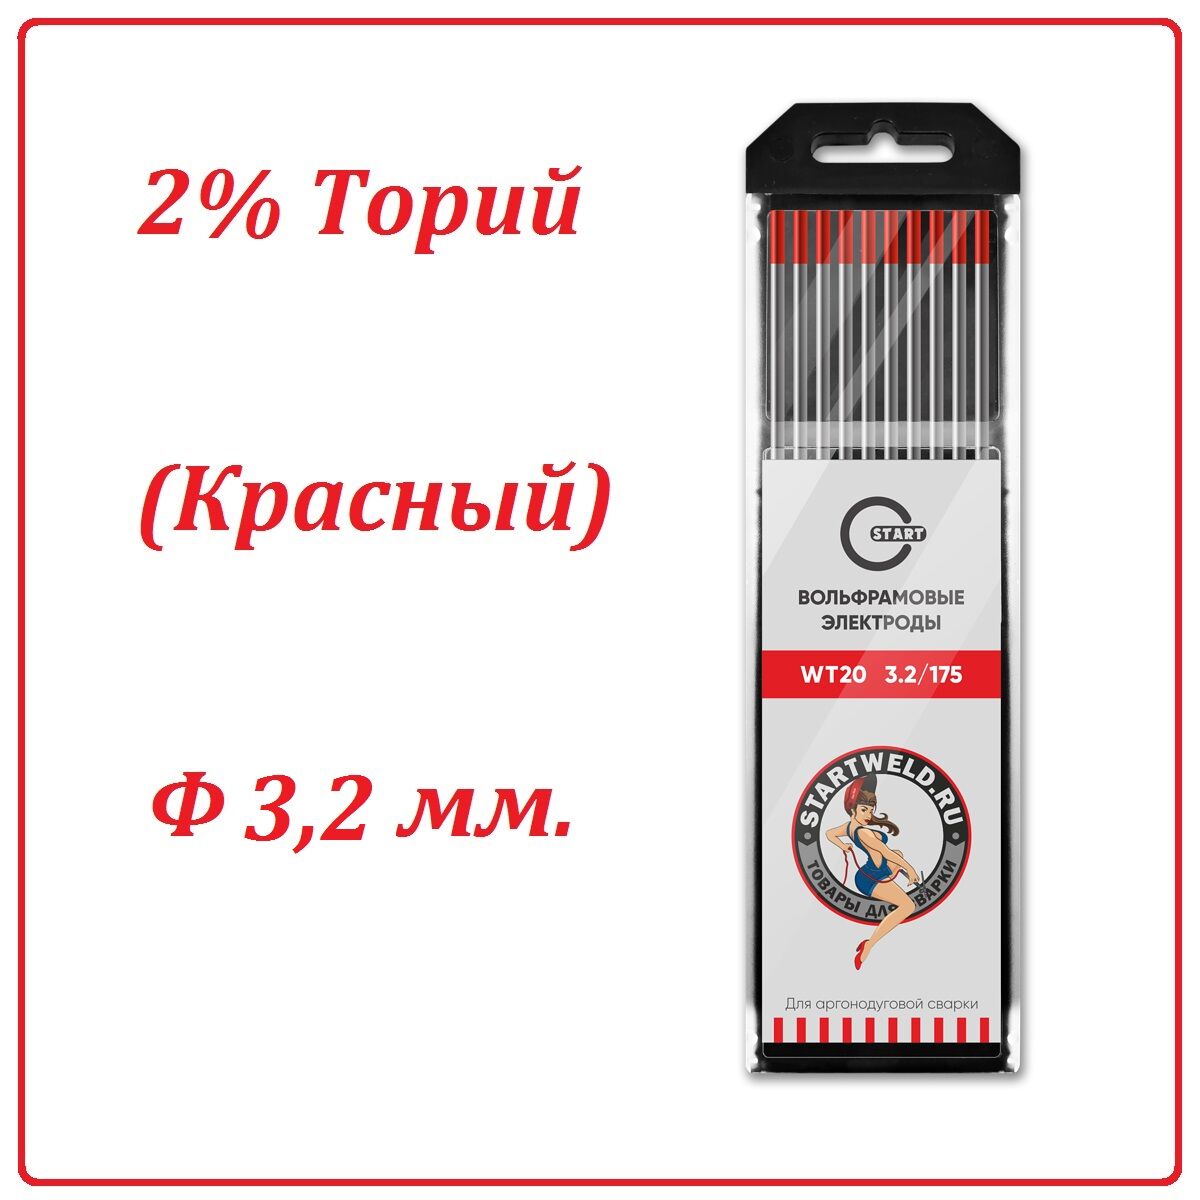 Вольфрамовый электрод WT 20 (3,2 мм. Красный 2% диоксида тория)